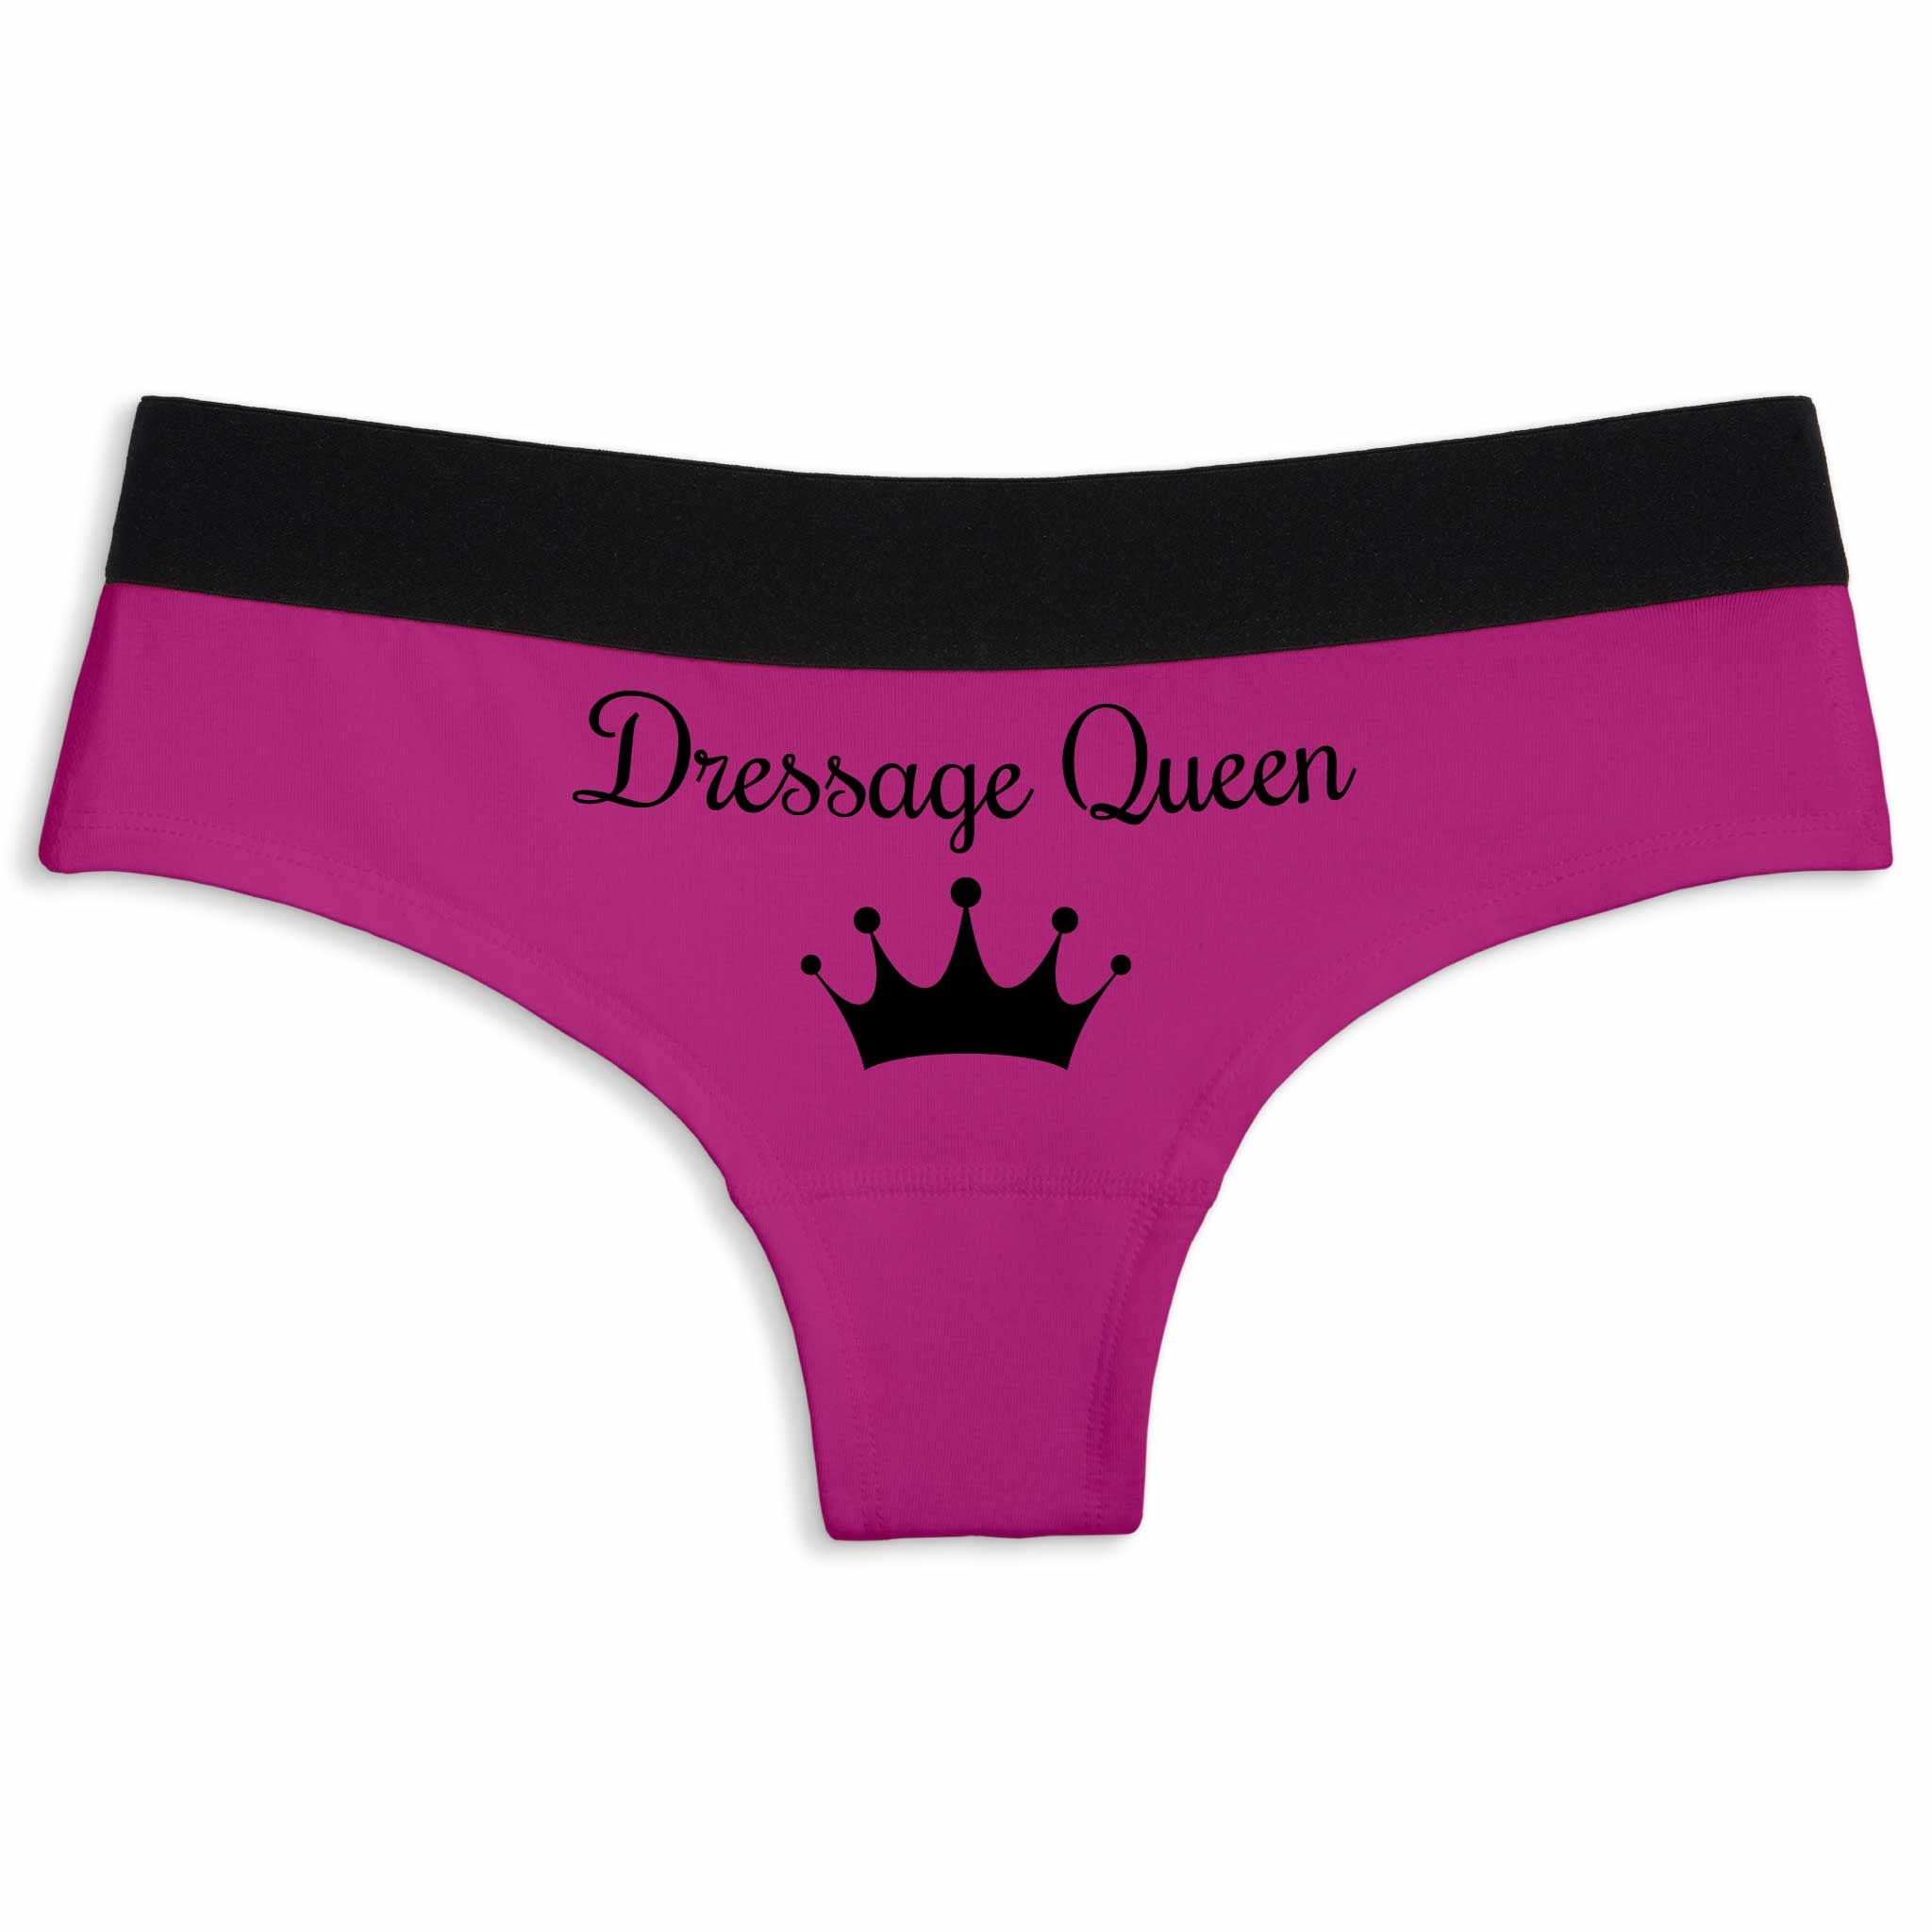 Dressage queen, Cheeky underwear